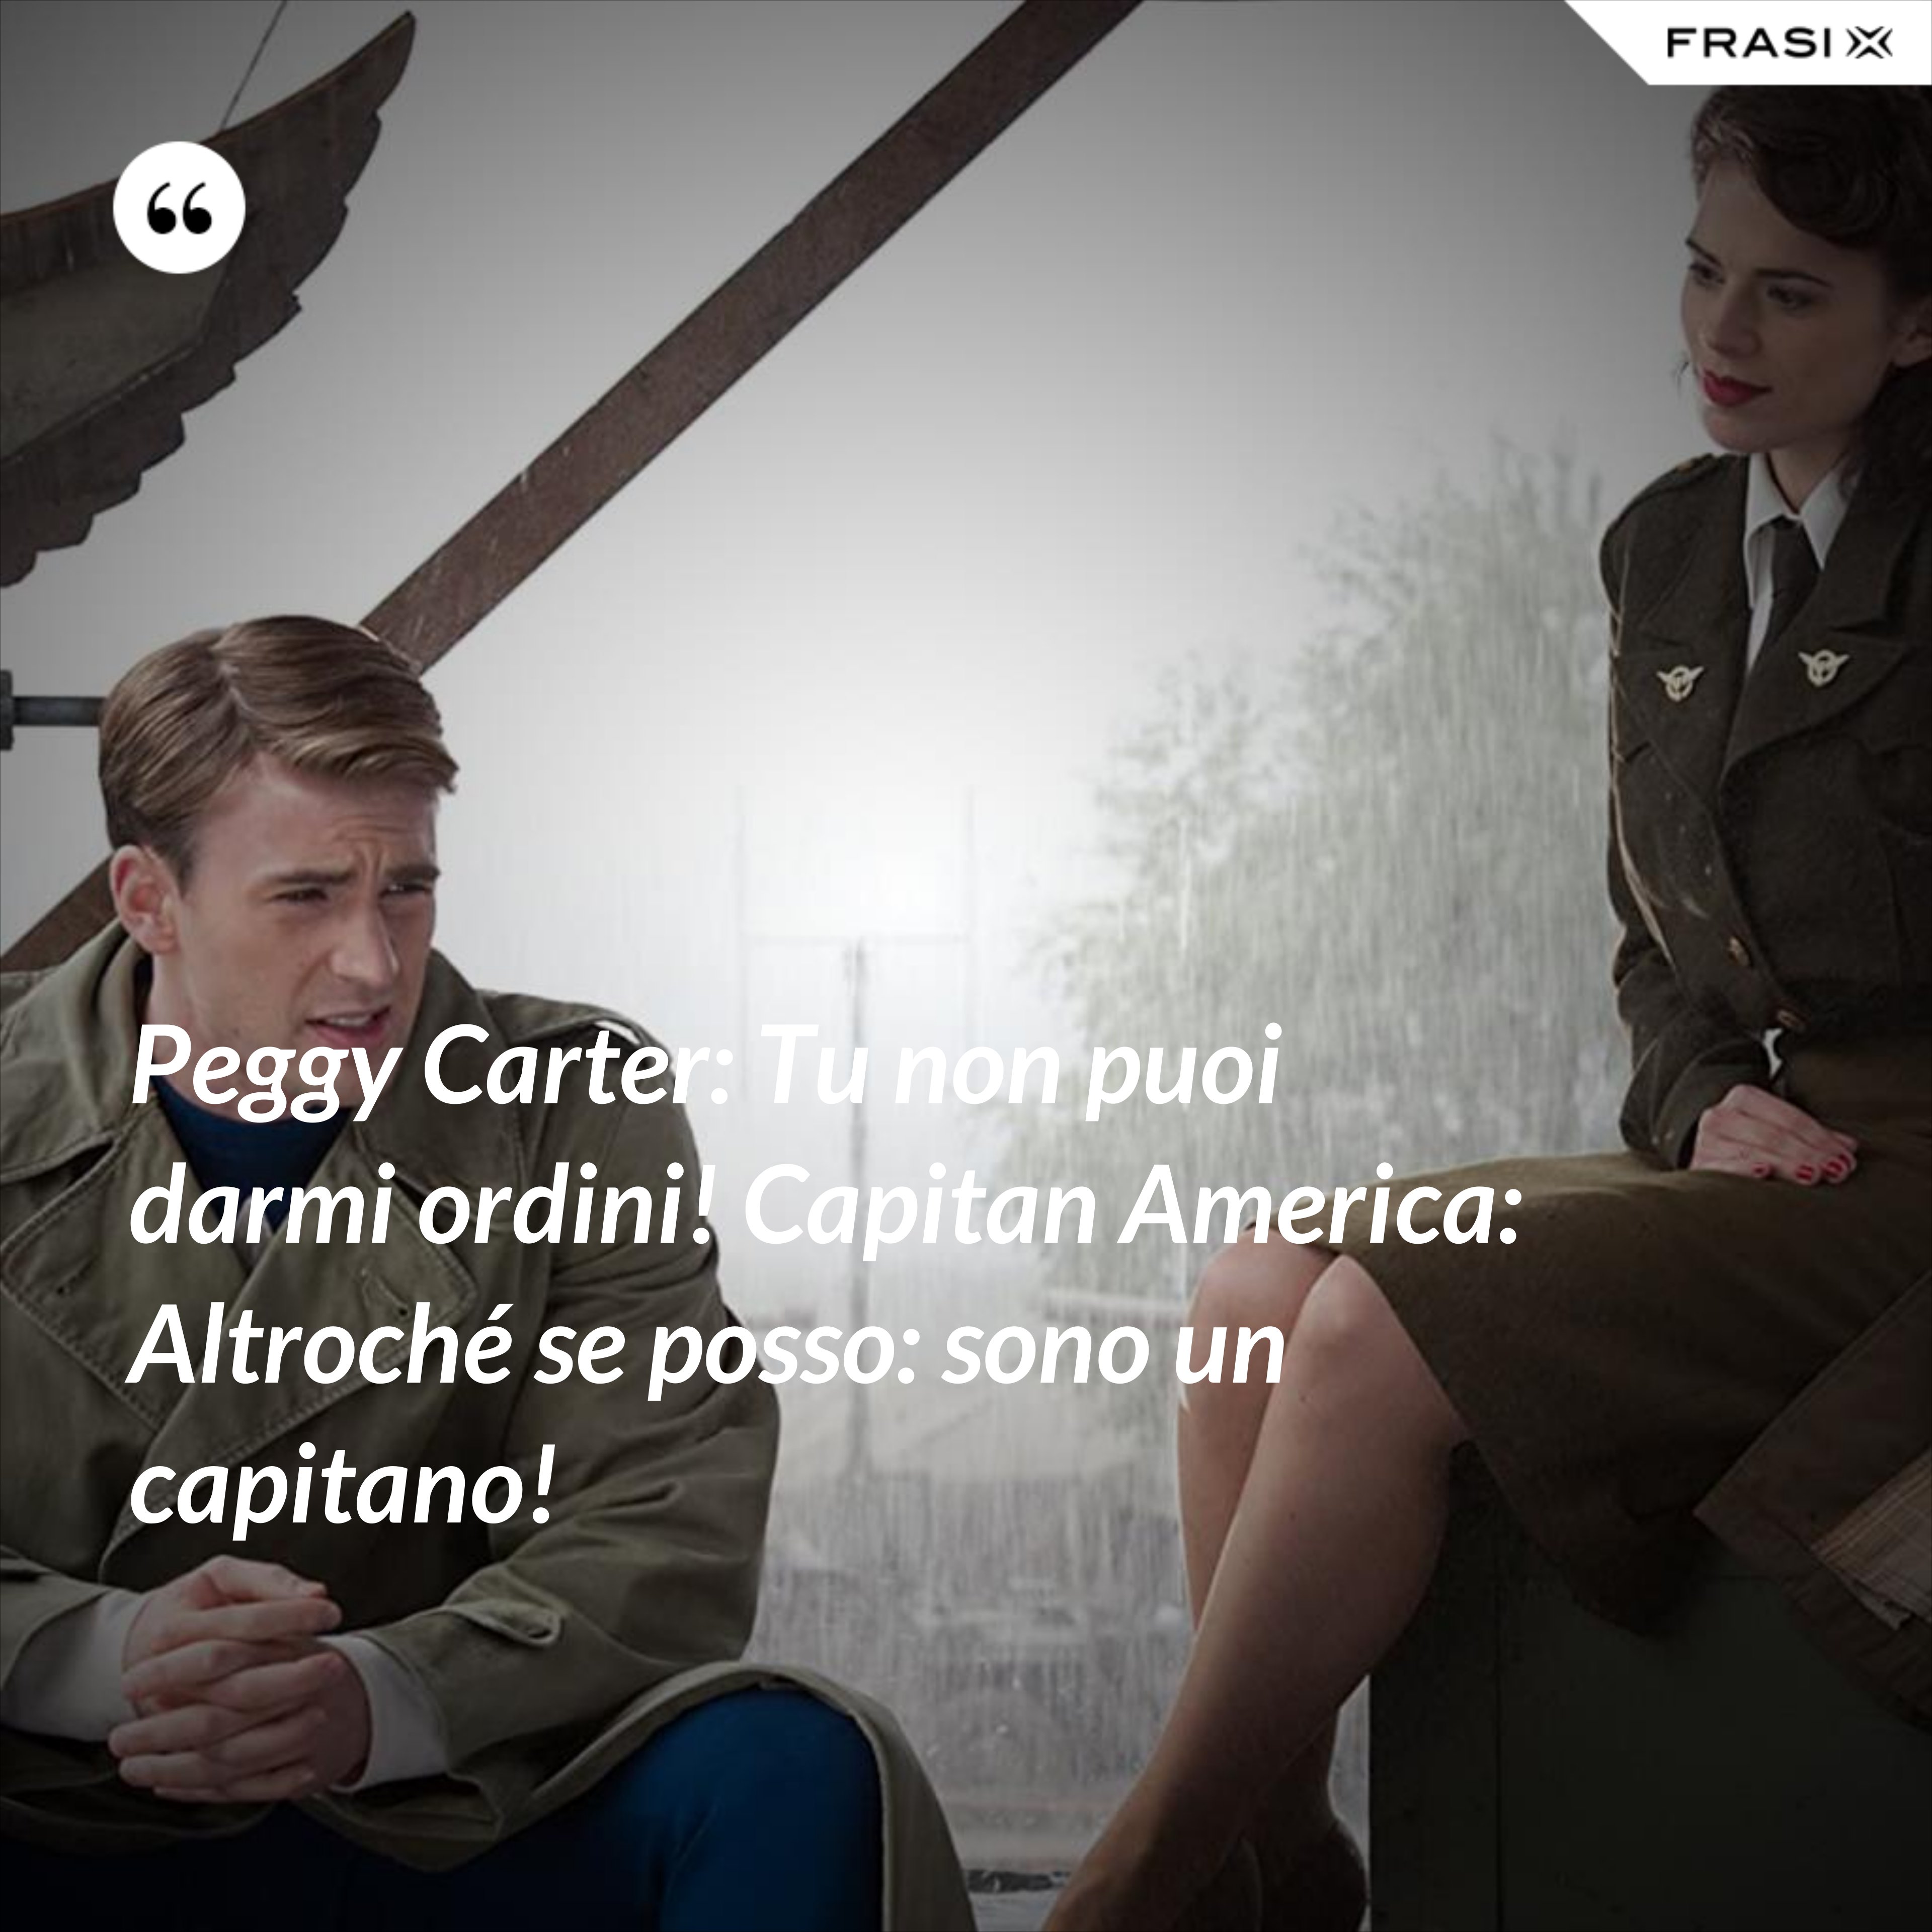 Peggy Carter: Tu non puoi darmi ordini! Capitan America: Altroché se posso: sono un capitano! - Anonimo